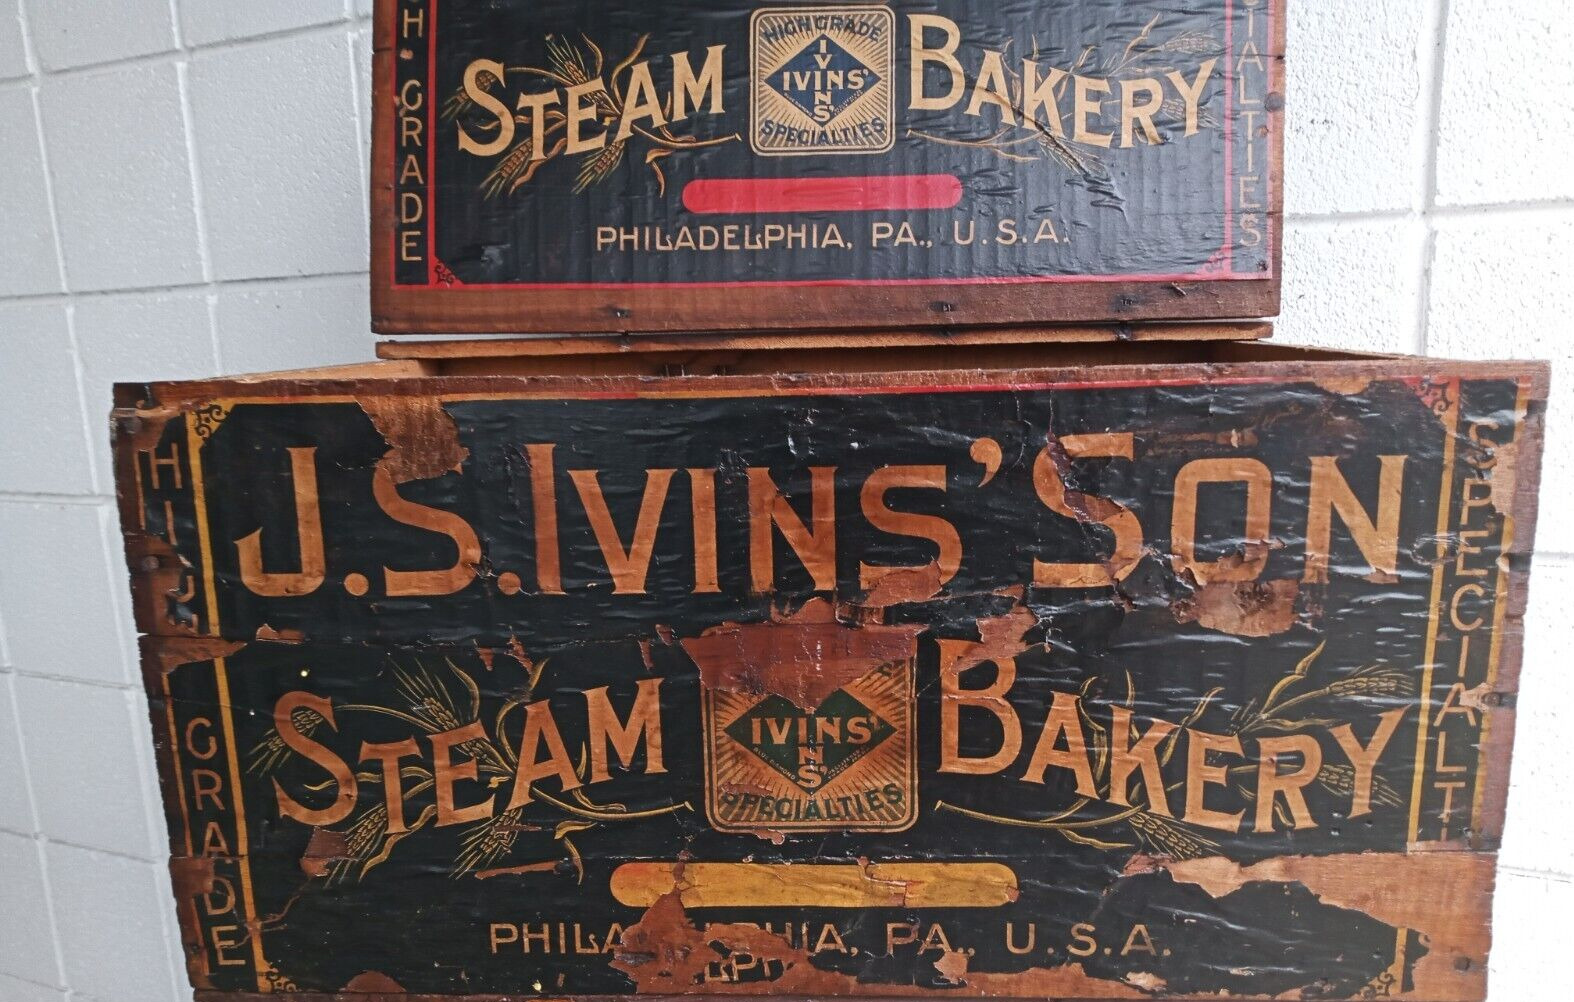 J.s Ivins Bakery Steam Bakery Advertising Box Hinge Lid Wood Crate Clean Storage